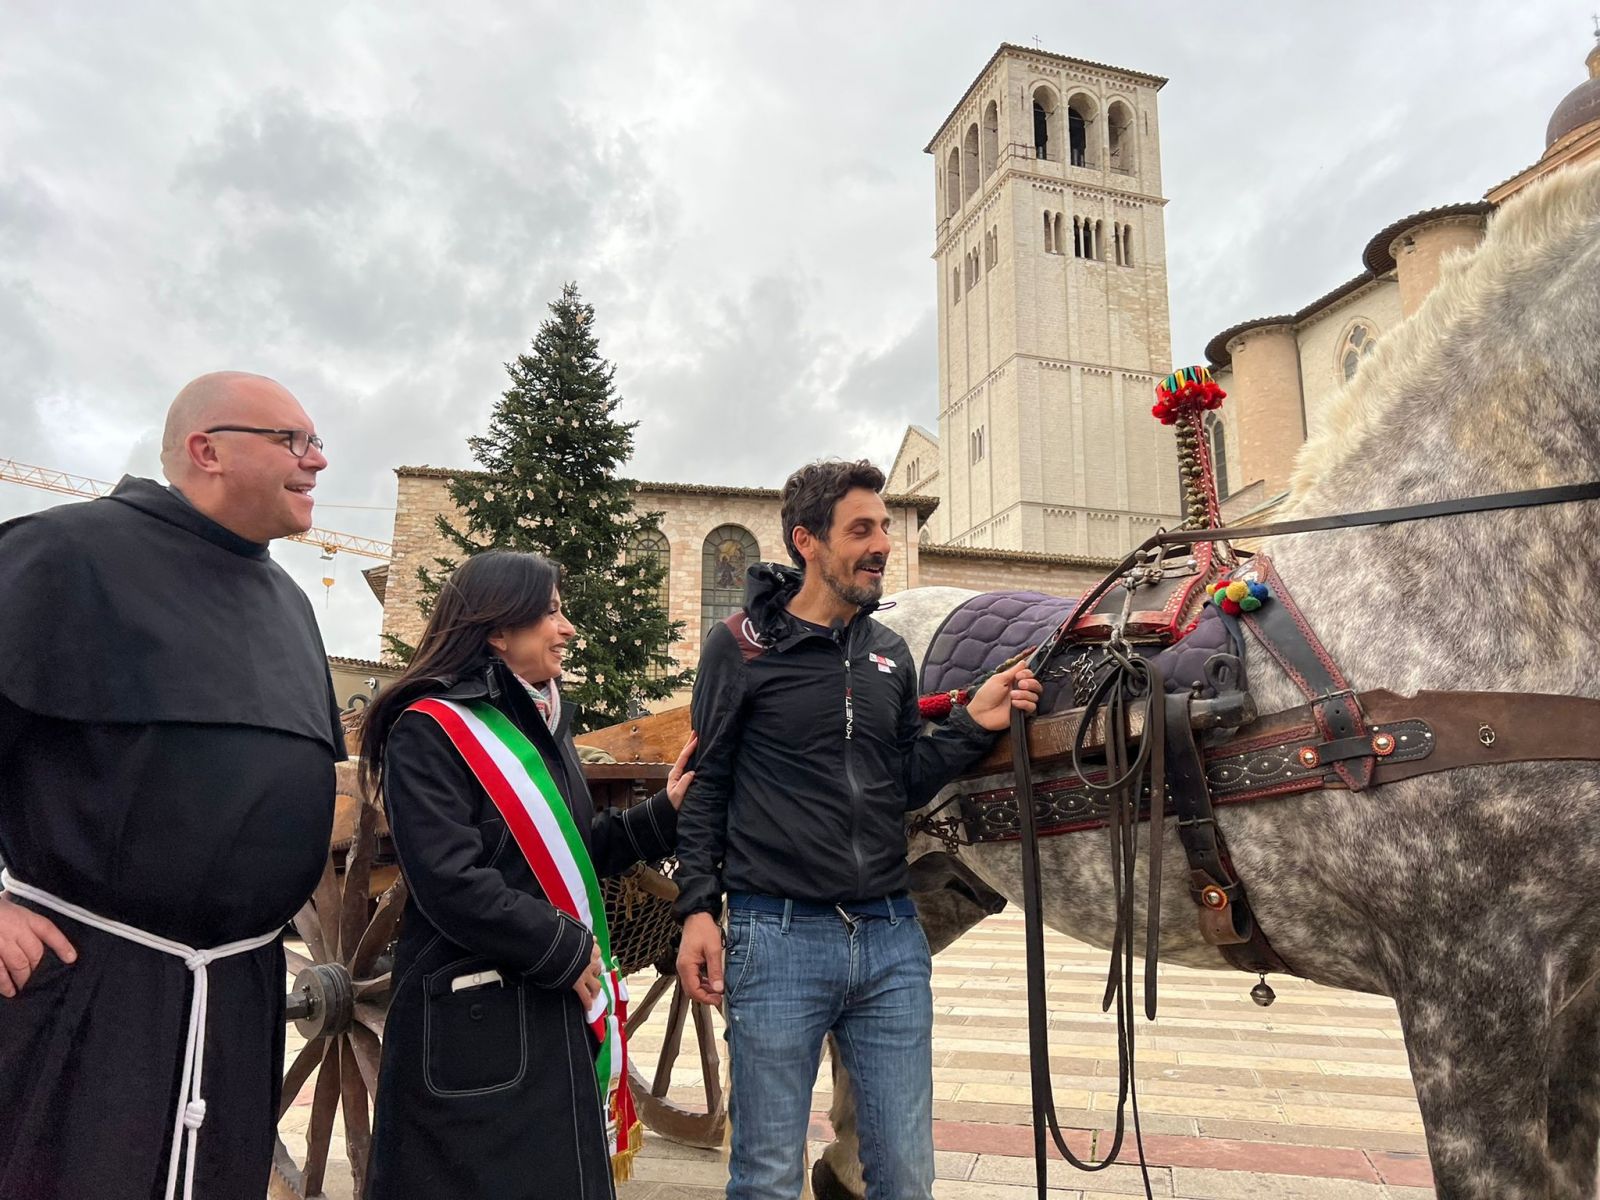 Nino Buttitta da Bagheria ad Assisi: termina il viaggio del ristoratore siciliano (foto+video)